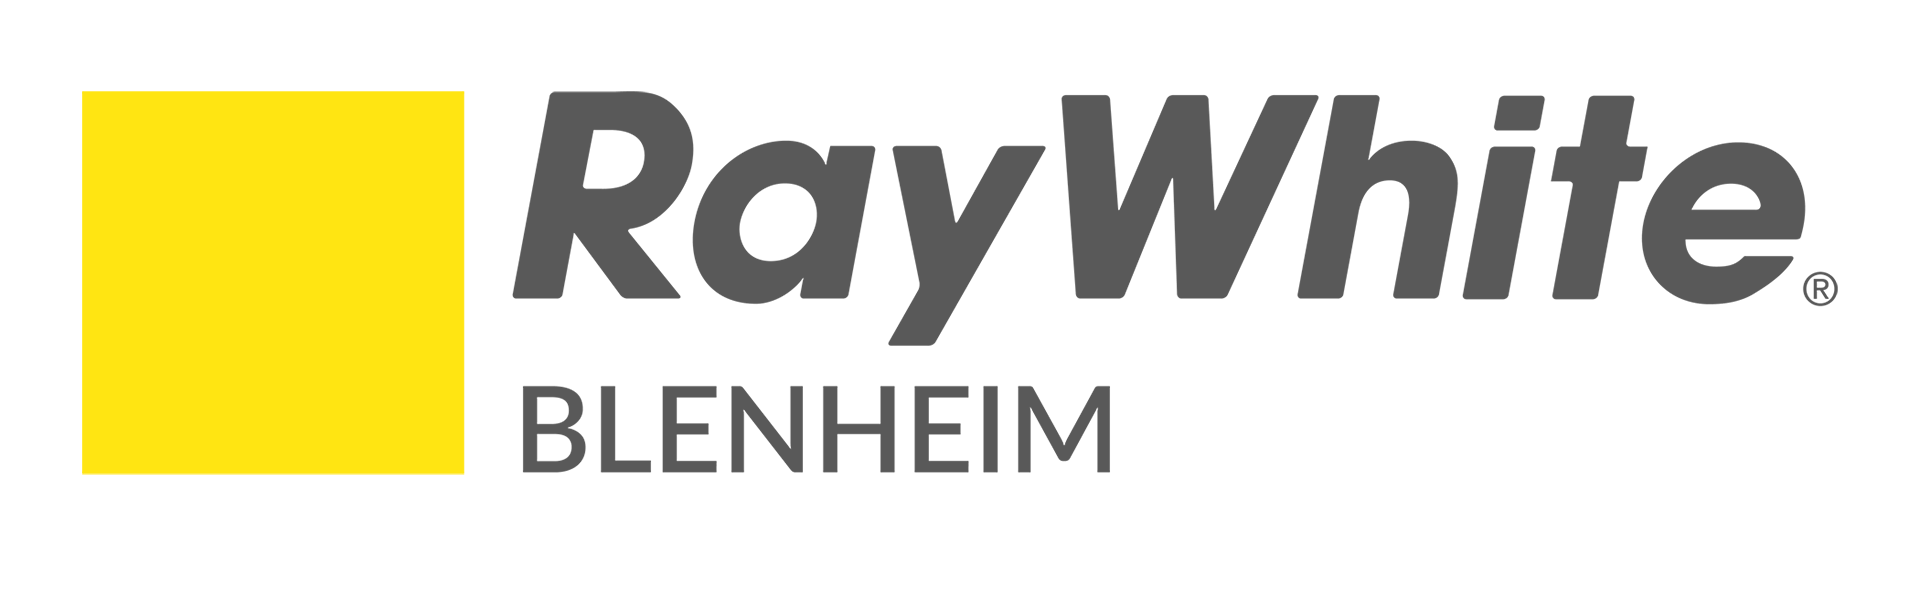 Ray White Blenheim Partner for School Start Marlborough